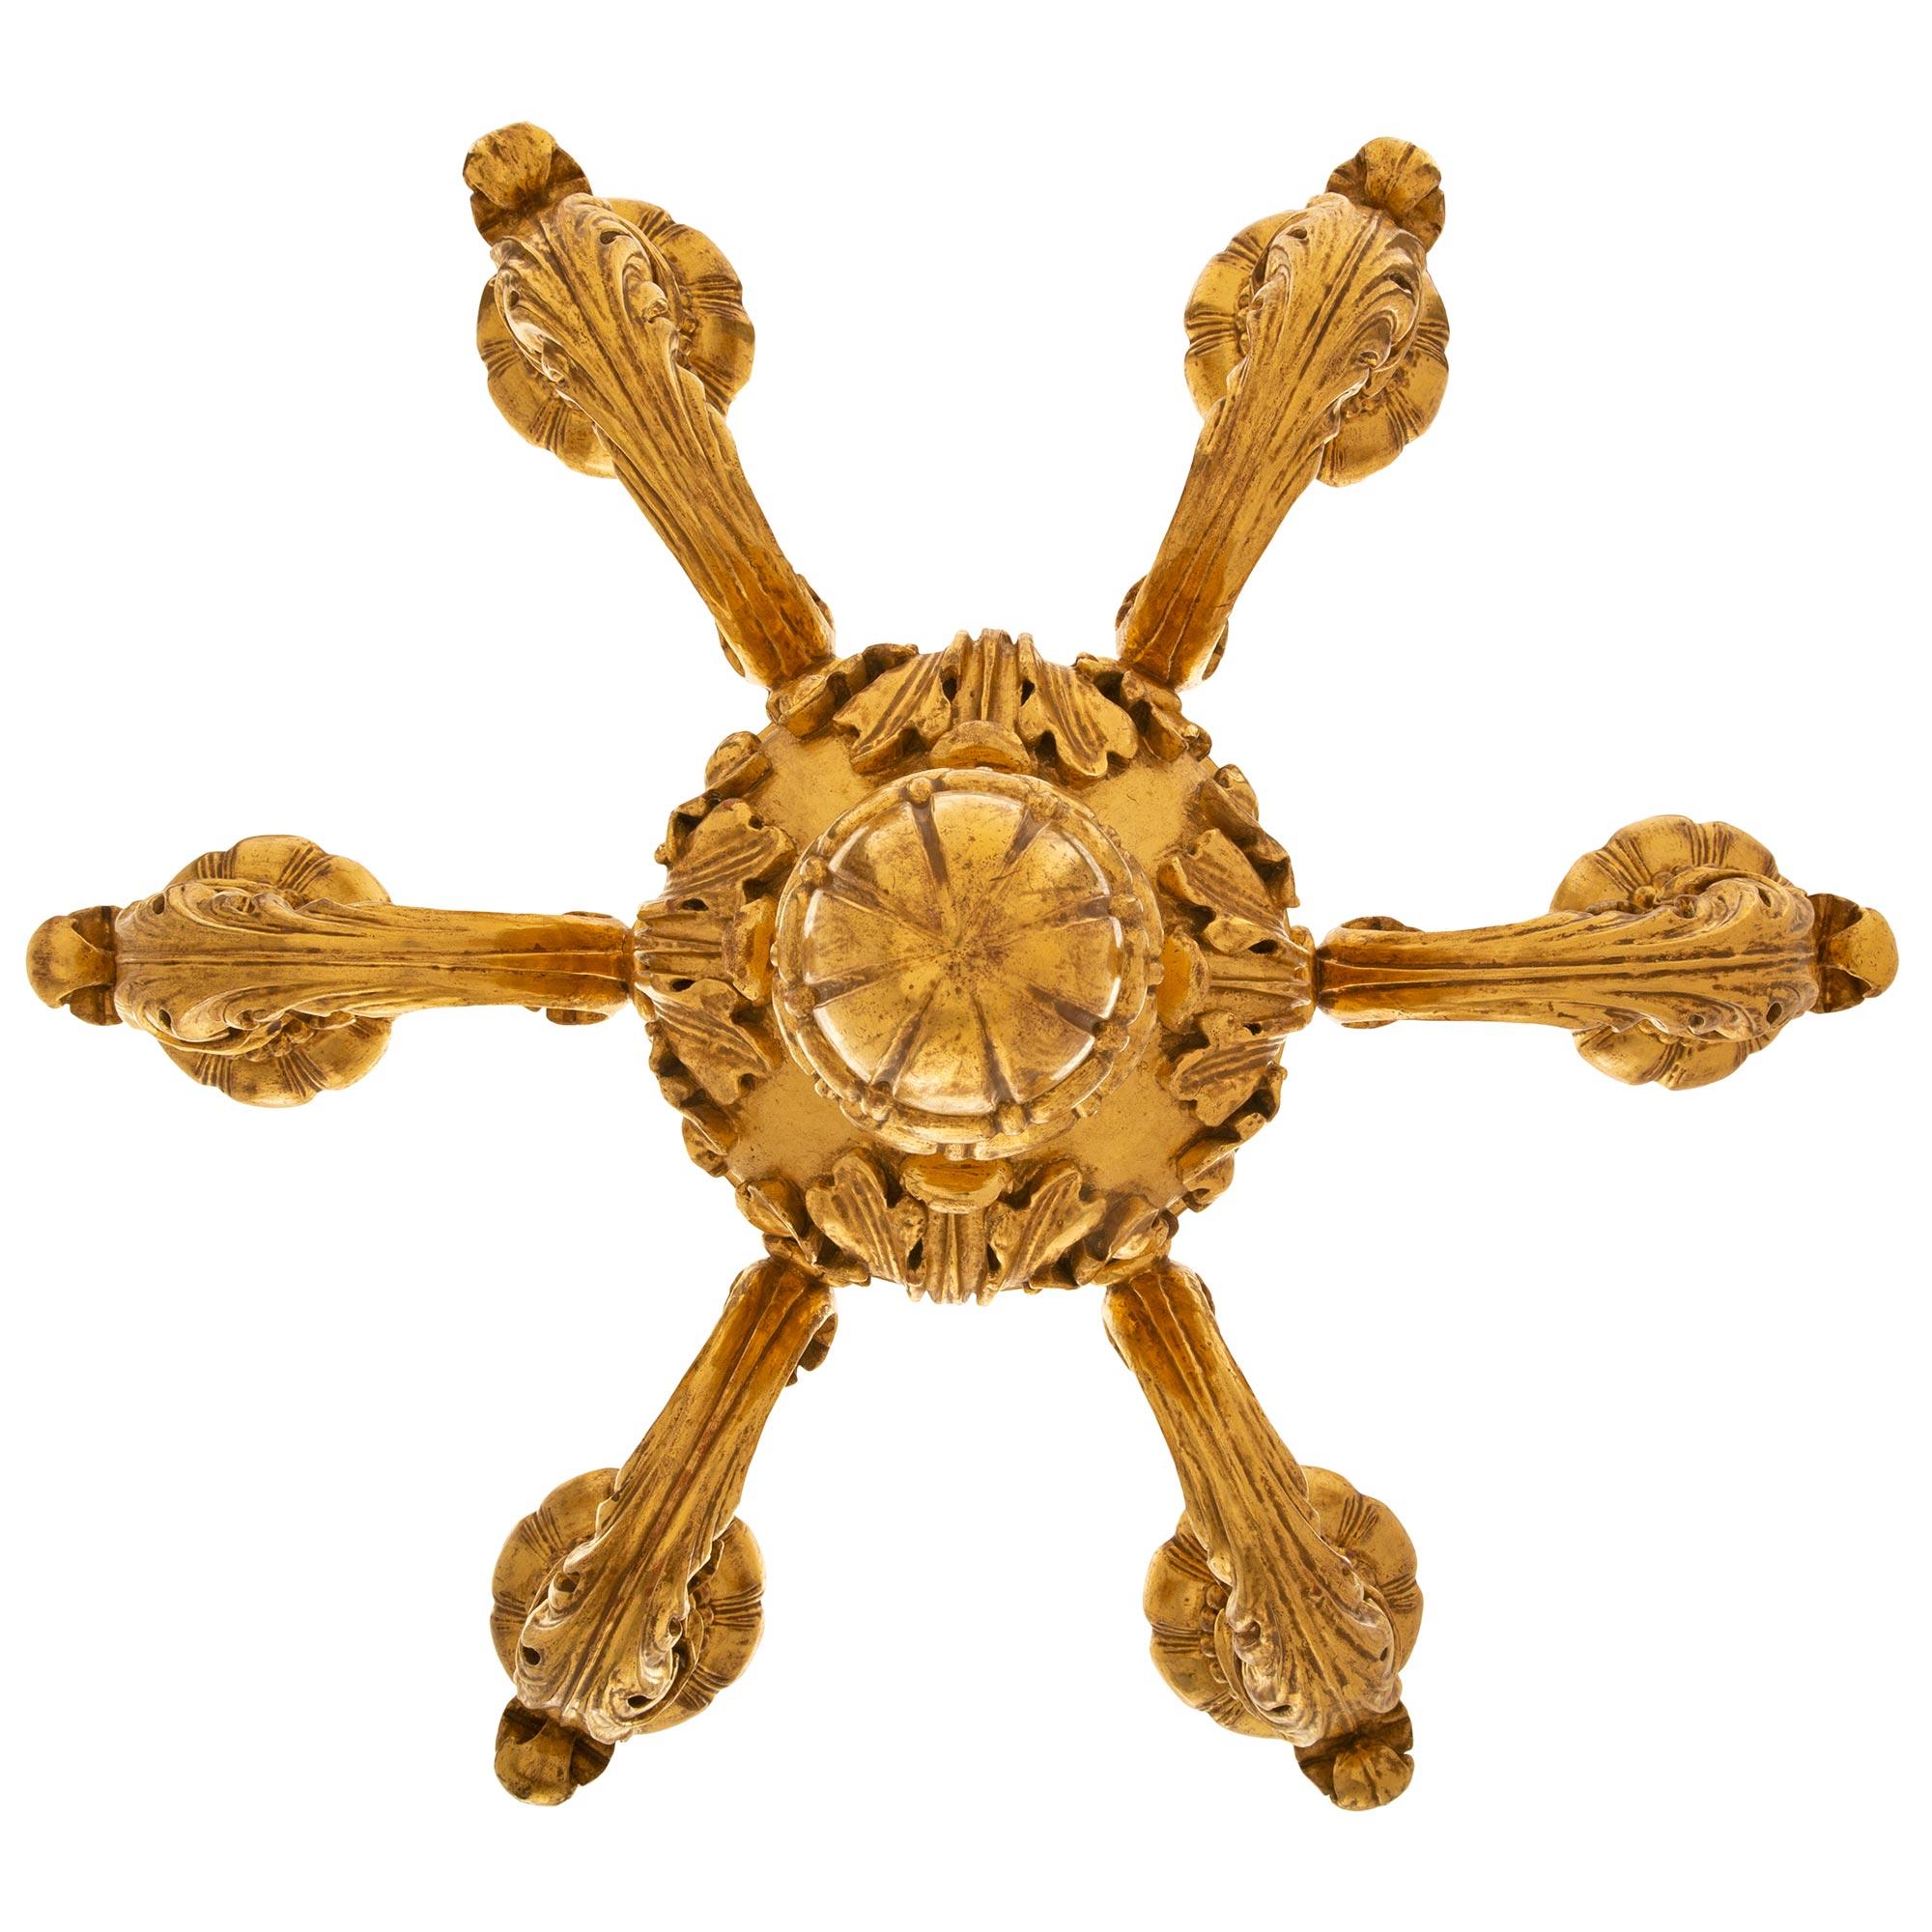 Paire de lustres américains en bois doré de style Louis XV du 19e siècle, estampillés Caldwell. Chaque lustre d'inspiration italienne à six bras est estampillé 'C' pour Edward F. Caldwell, et est centré par un élégant fleuron inférieur en roseau